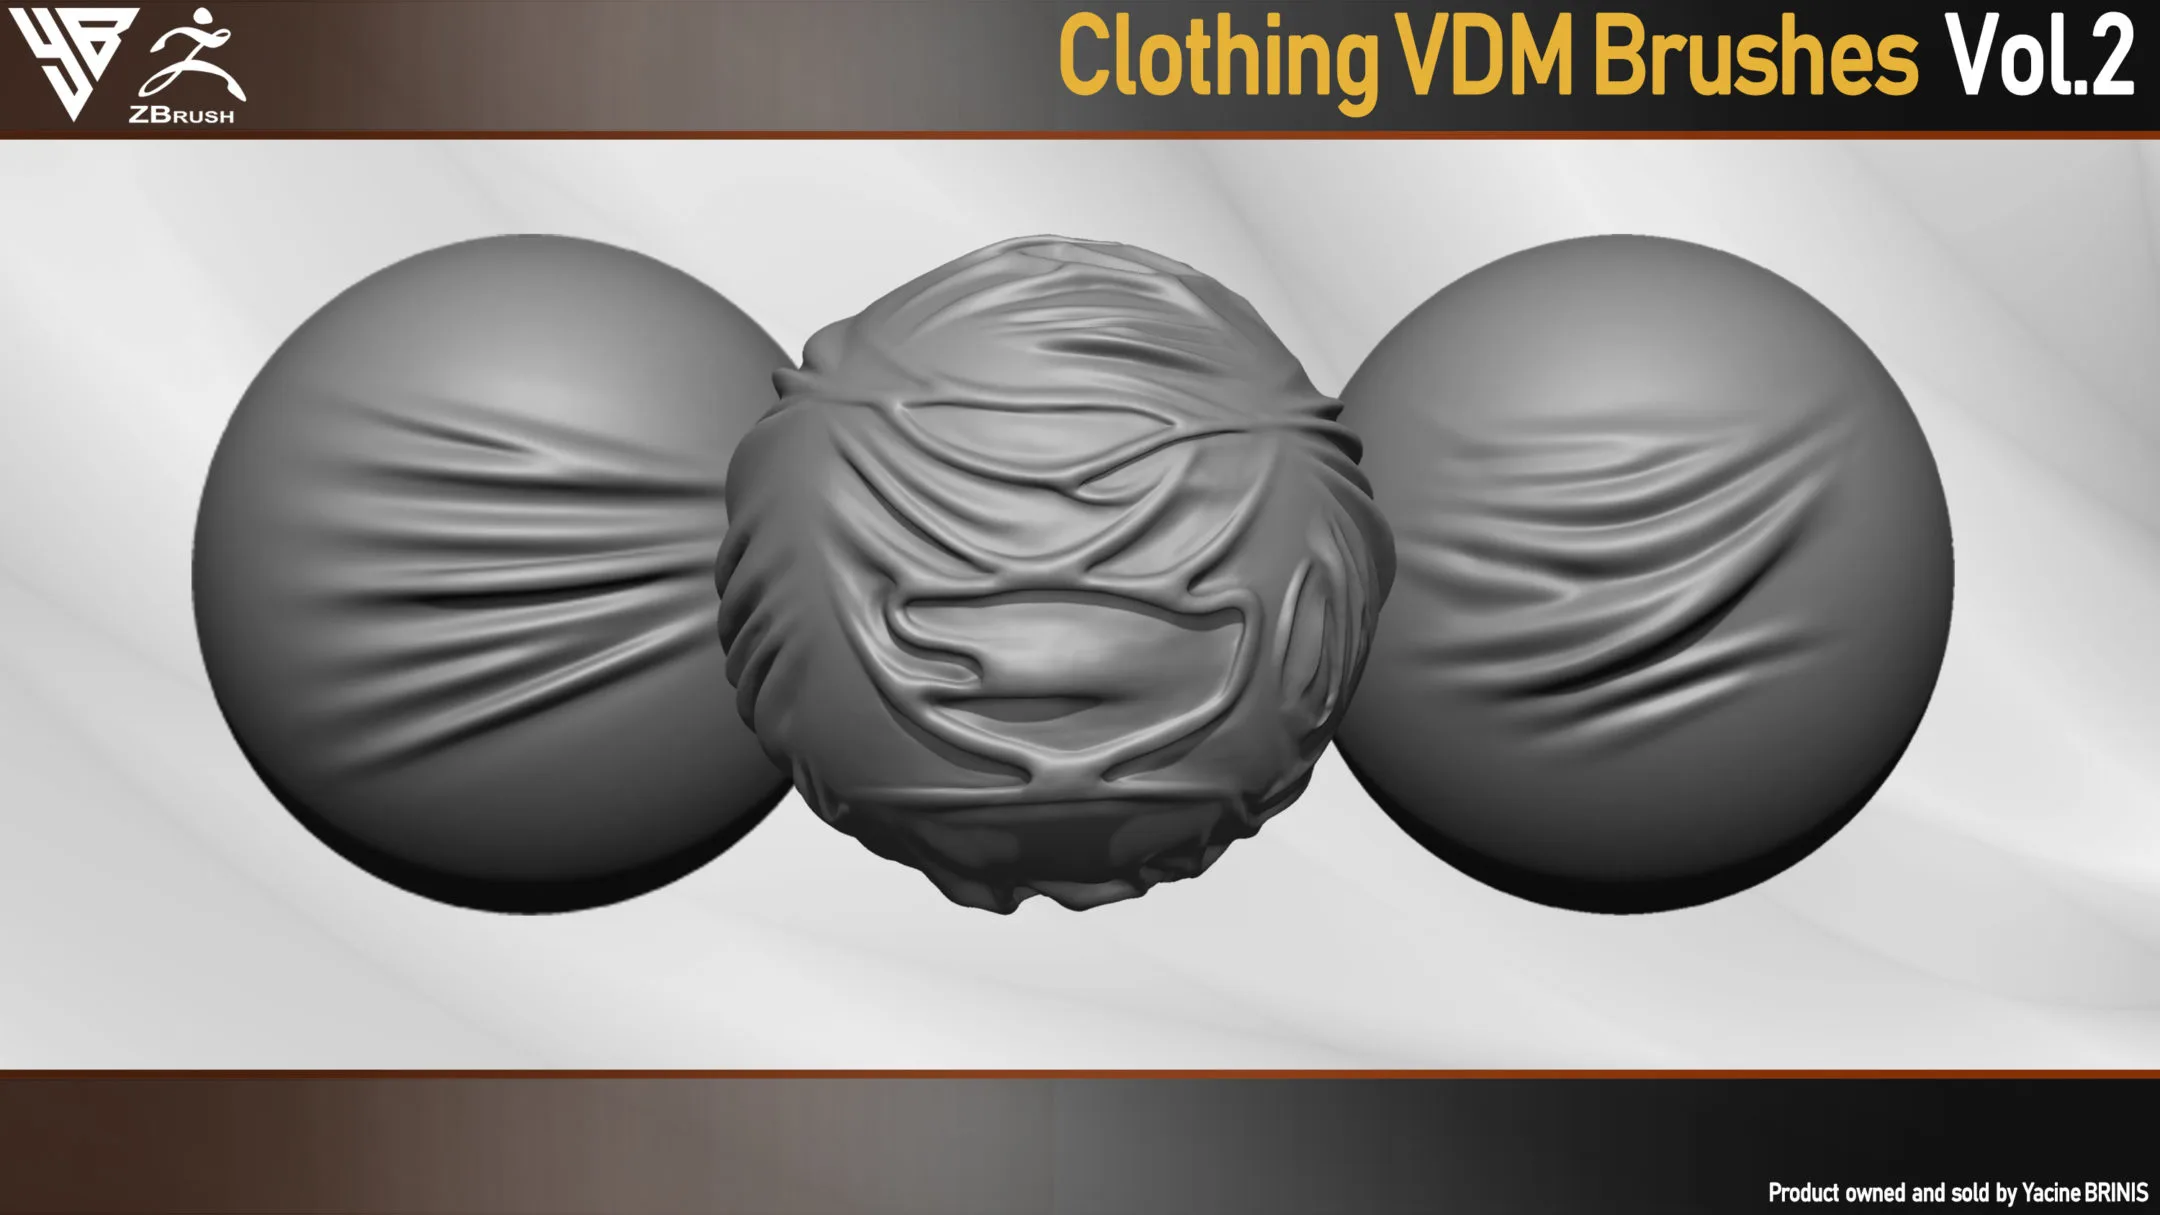 50 VDM Clothing Brushes for ZBrush (Creases, Folds, Wrinkles, Silks) + 50 Alphas. Vol 2